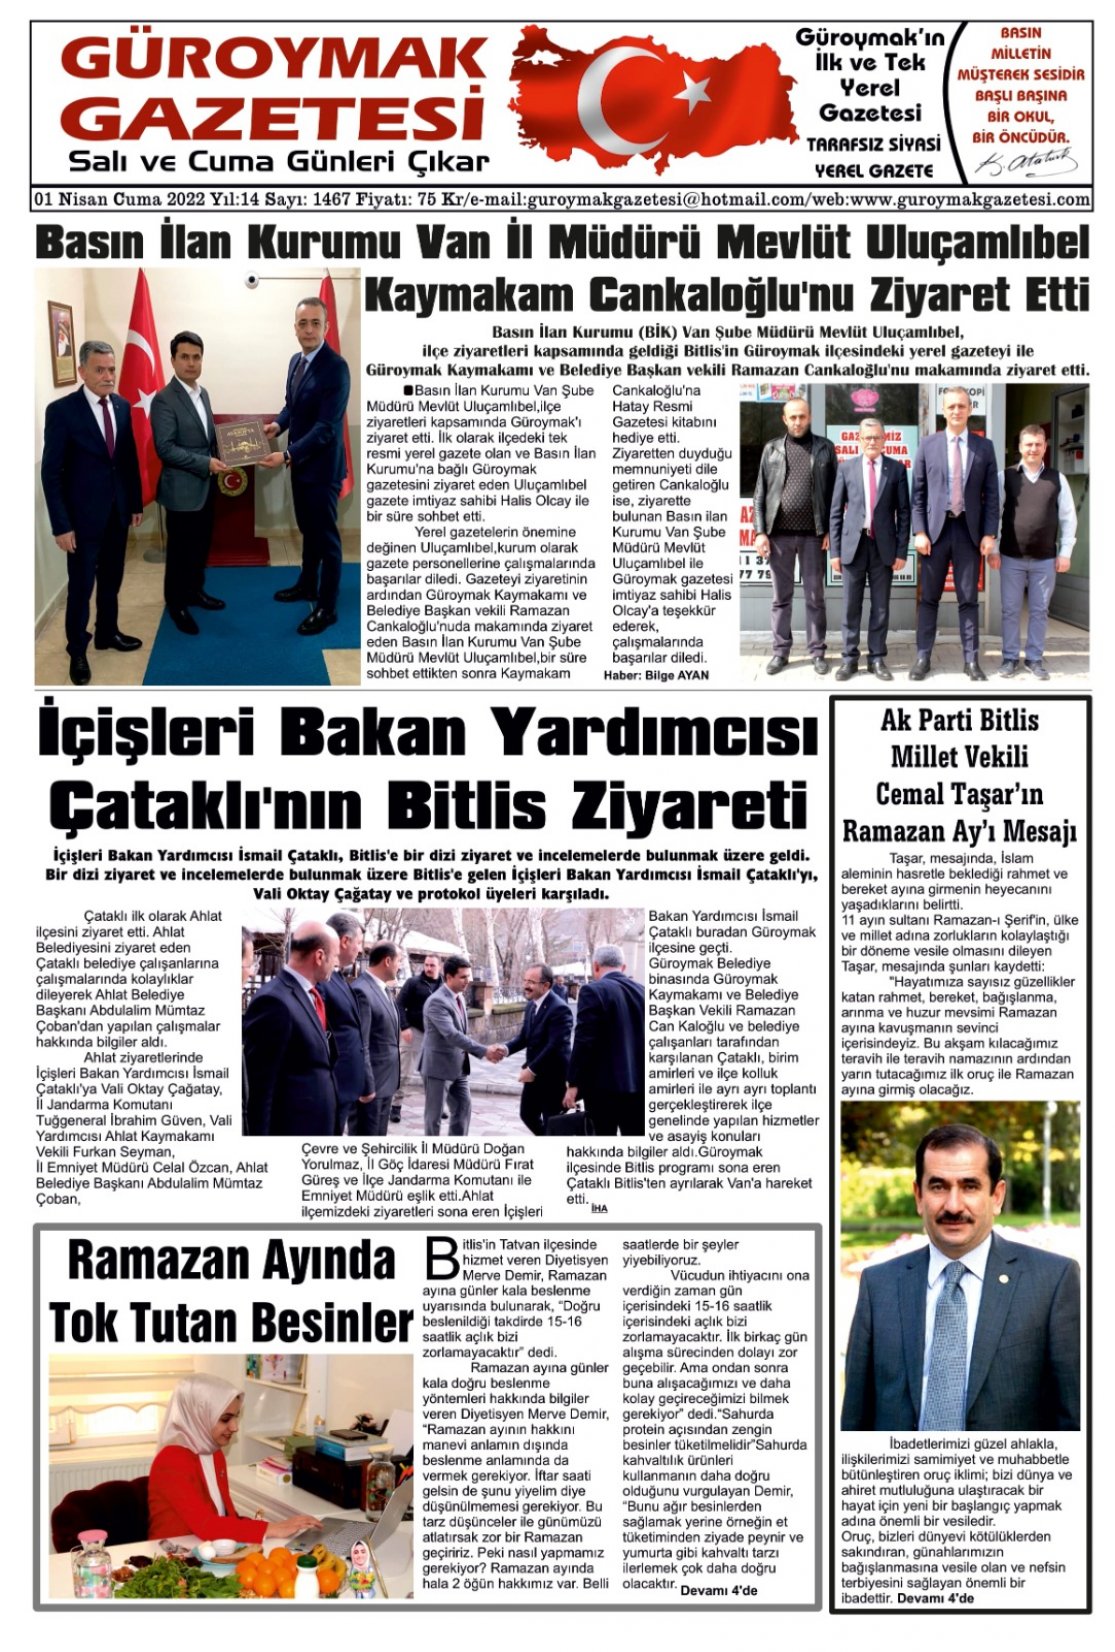 Güroymak Gazetesi WhatsApp Image 2022-03-31 at 16.15.52.jpeg Sayılı Gazete Küpürü